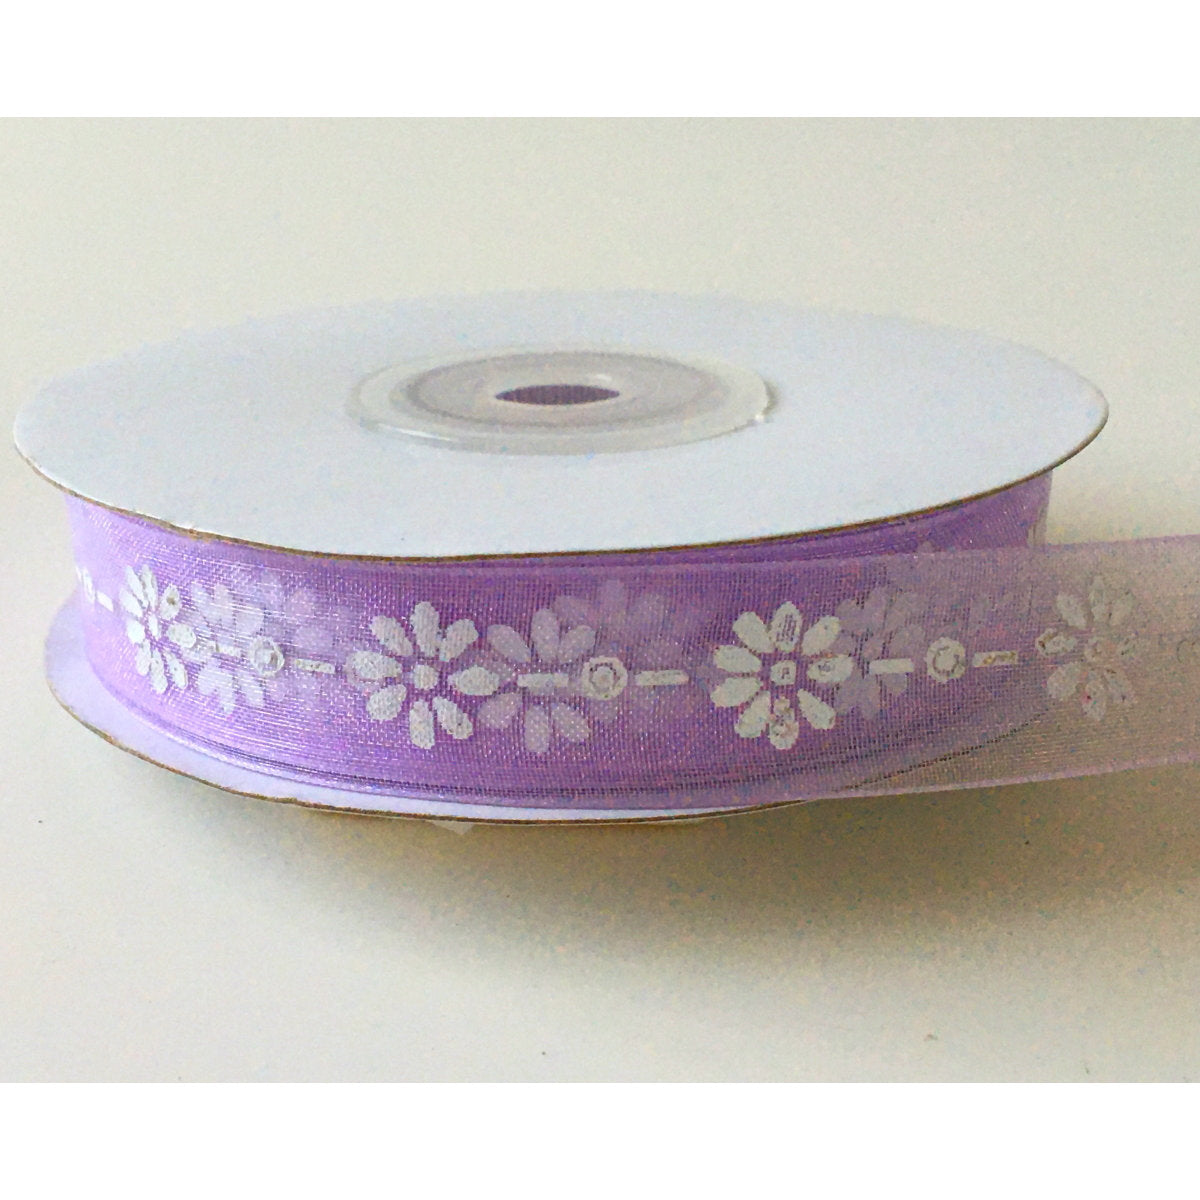 Organza Printed Ribbon / Daisies 25 yards - Lavender